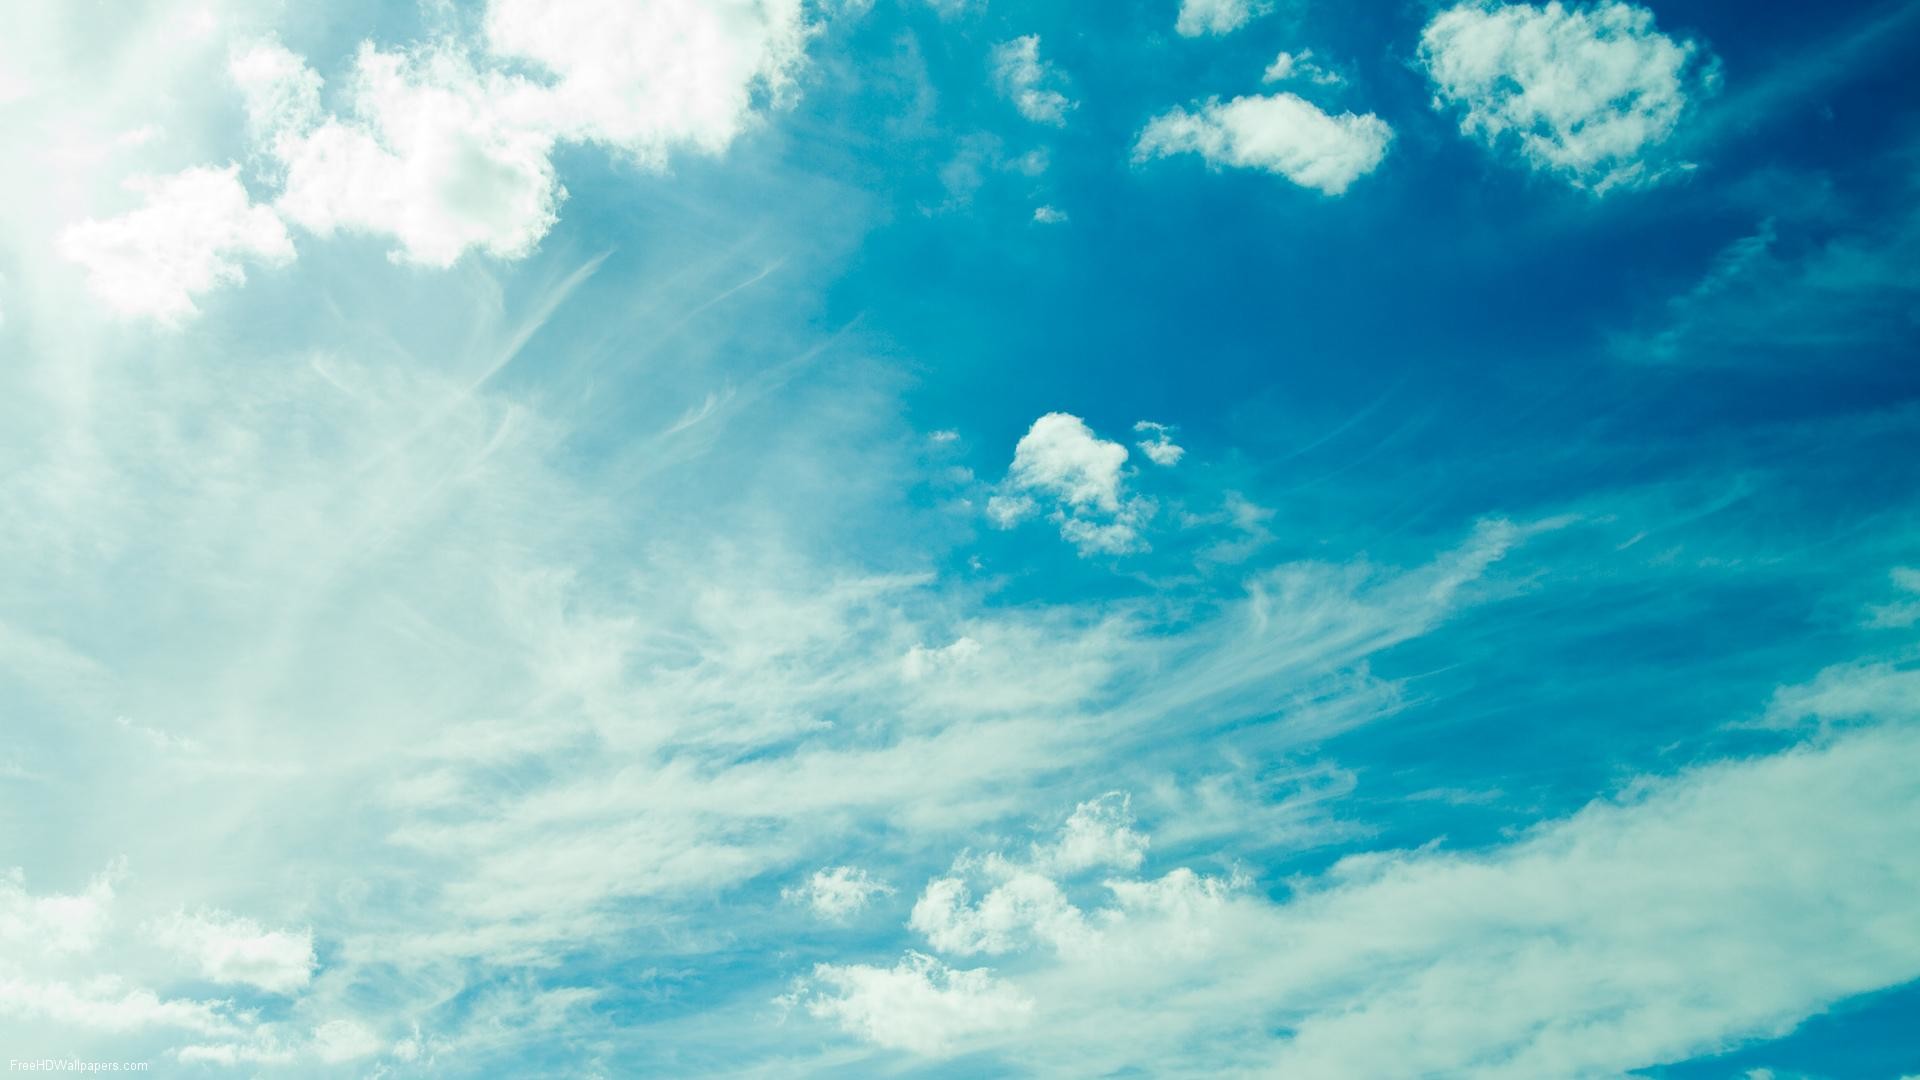 Hình nền bầu trời xanh sẽ mang đến cho bạn cảm giác thư giãn và yên tĩnh khi nhìn vào màn hình. Hãy trang trí cho máy tính của bạn bằng hình ảnh bầu trời xanh tuyệt đẹp này và cảm nhận sự thanh thản mà nó mang lại.